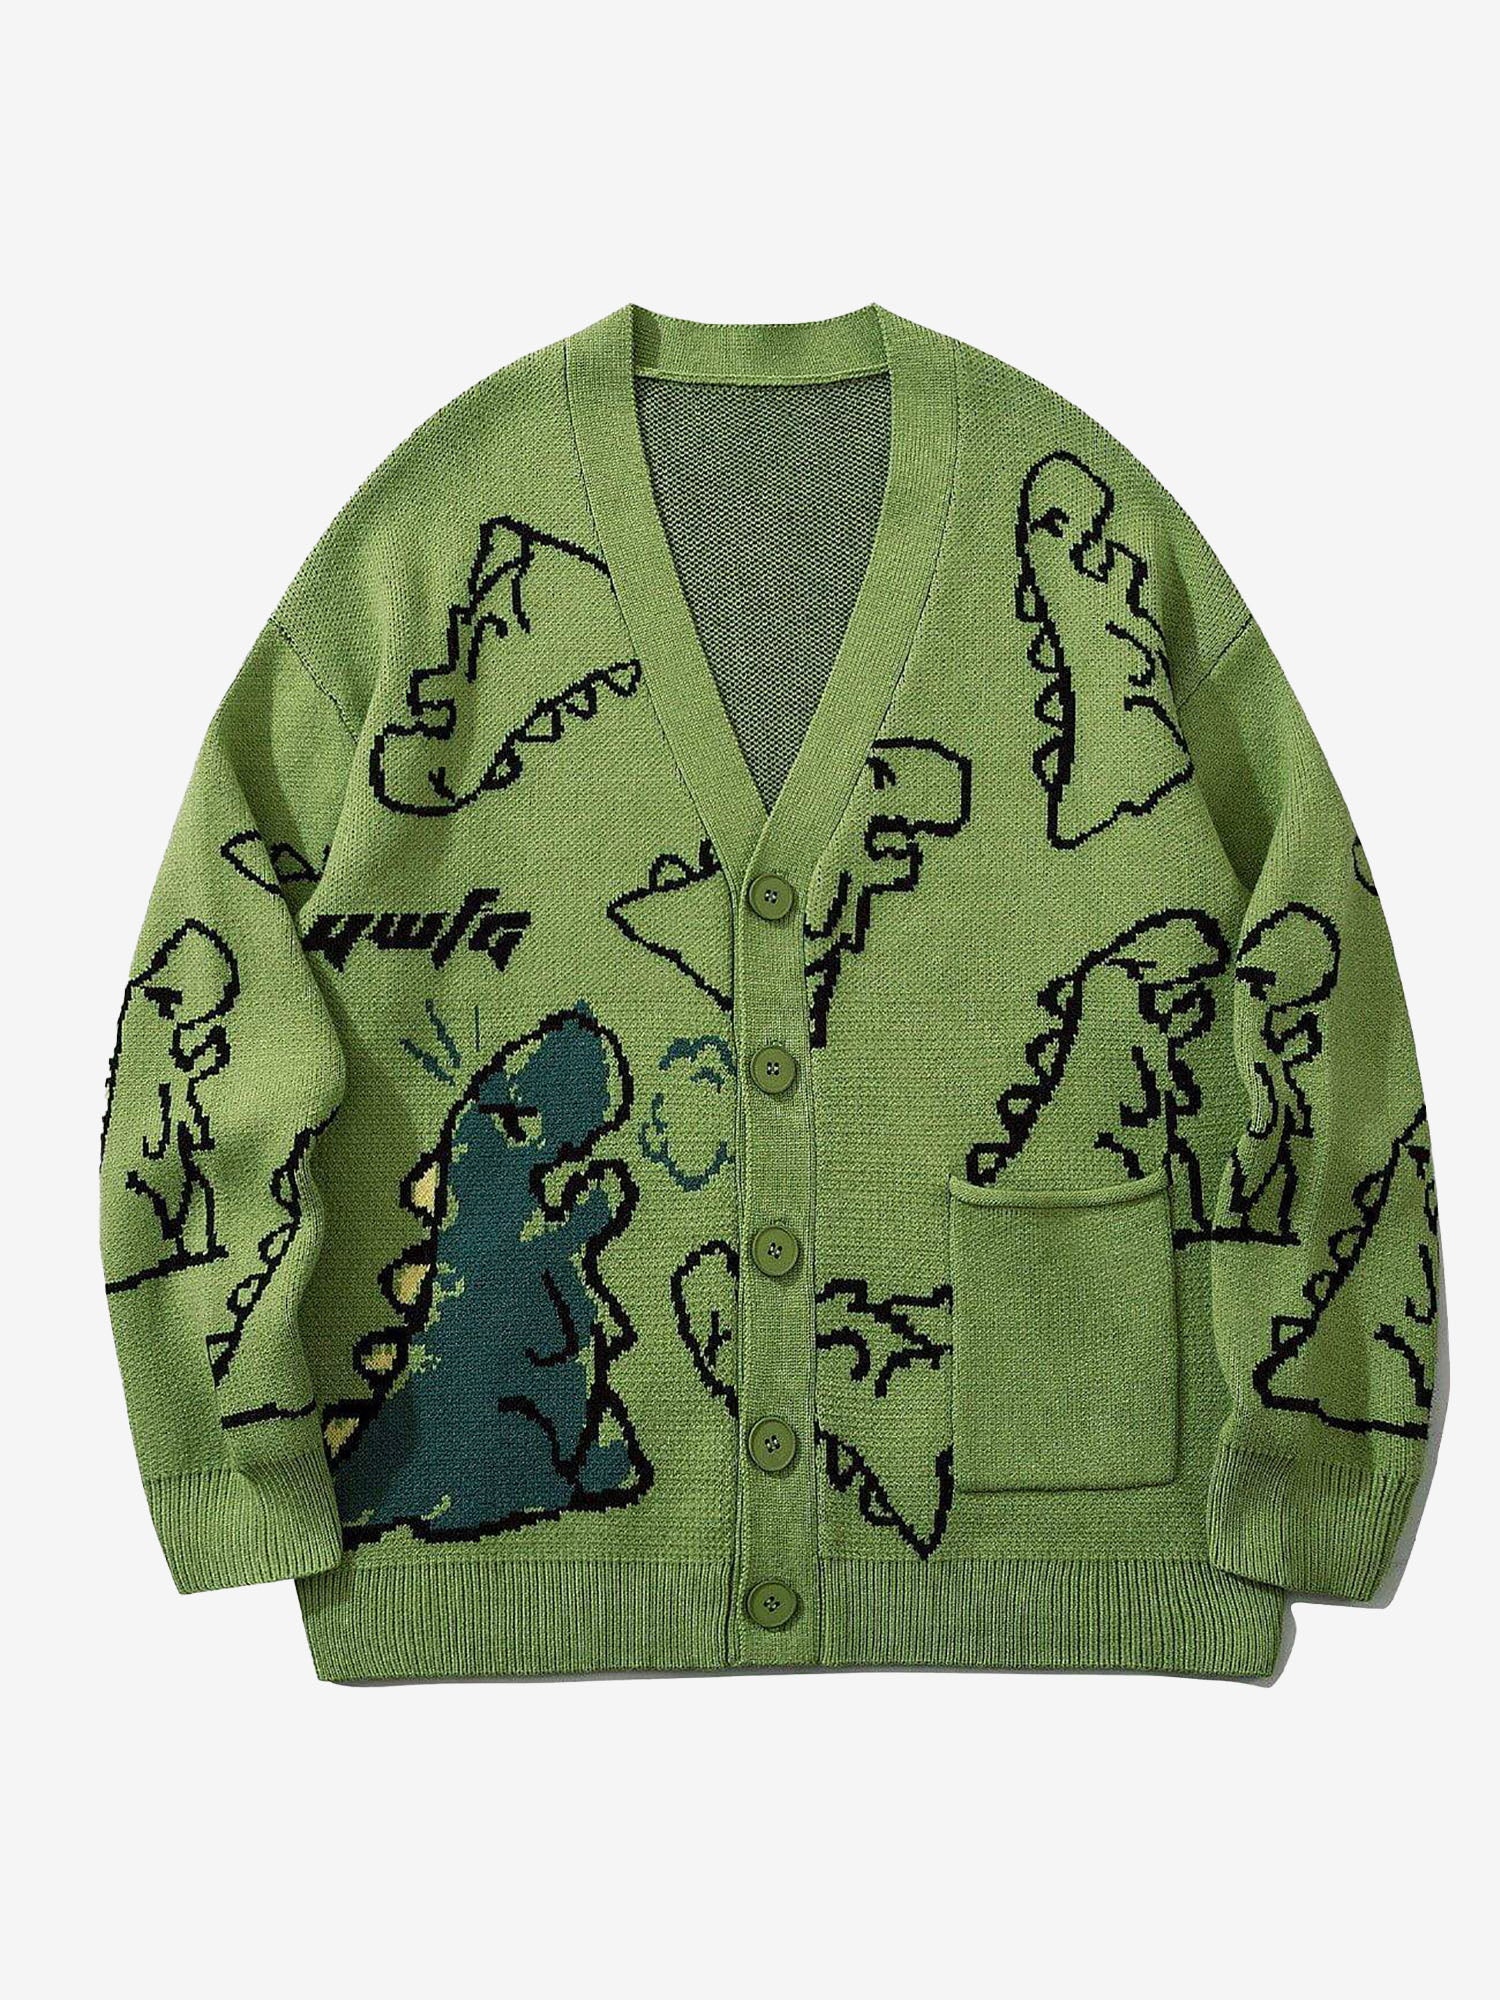 JUSTNOTAG Dinosaur Cartoon Pattern Knitted Grandpa Cardigan